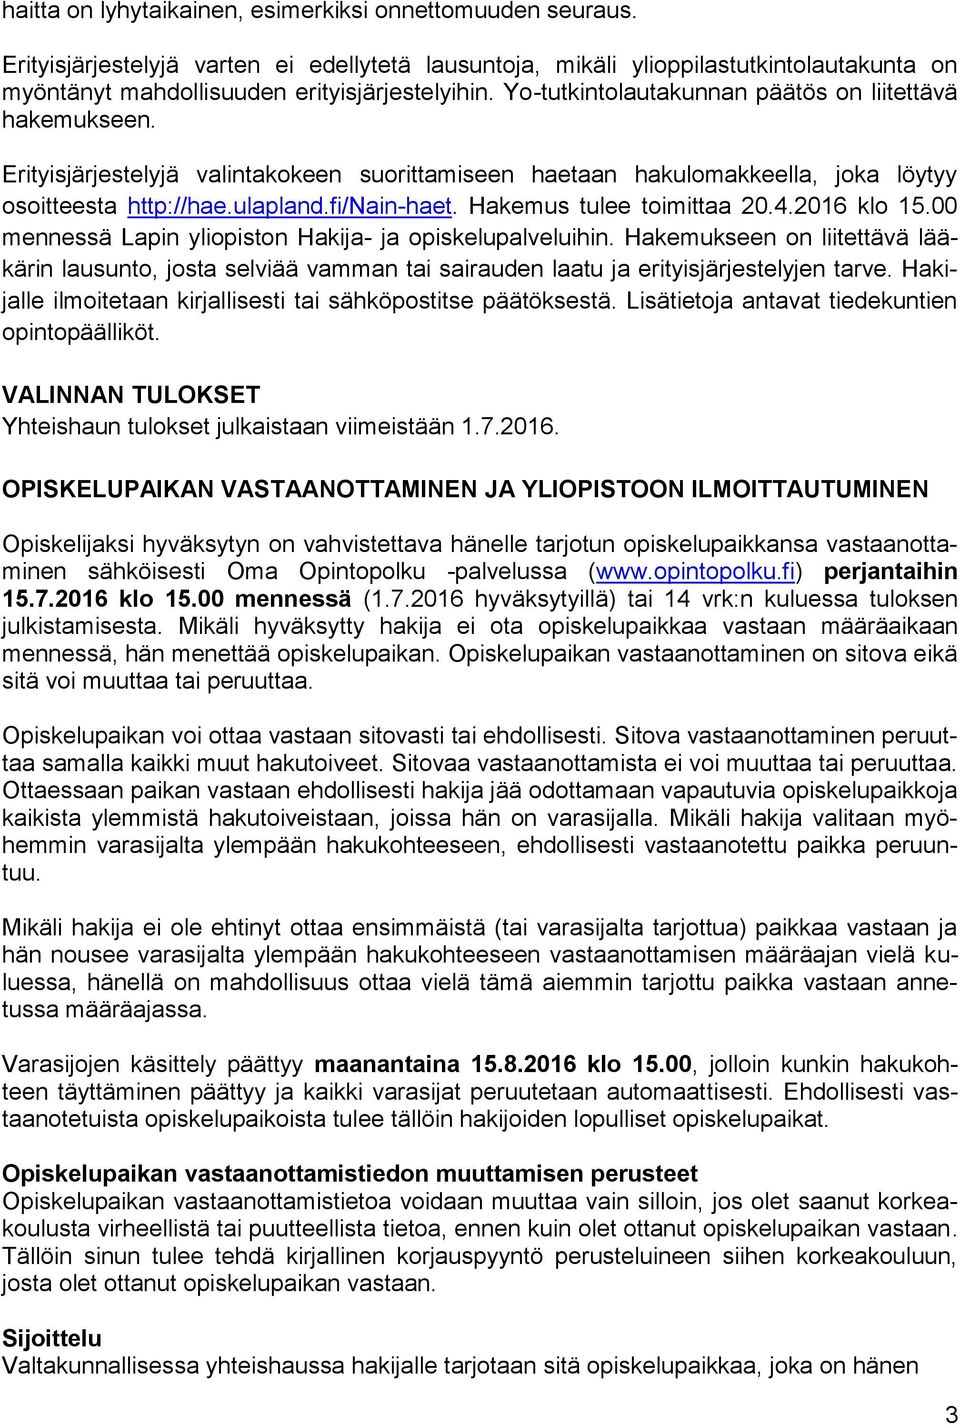 Hakemus tulee toimittaa 20.4.2016 klo 15.00 mennessä Lapin yliopiston Hakija- ja opiskelupalveluihin.